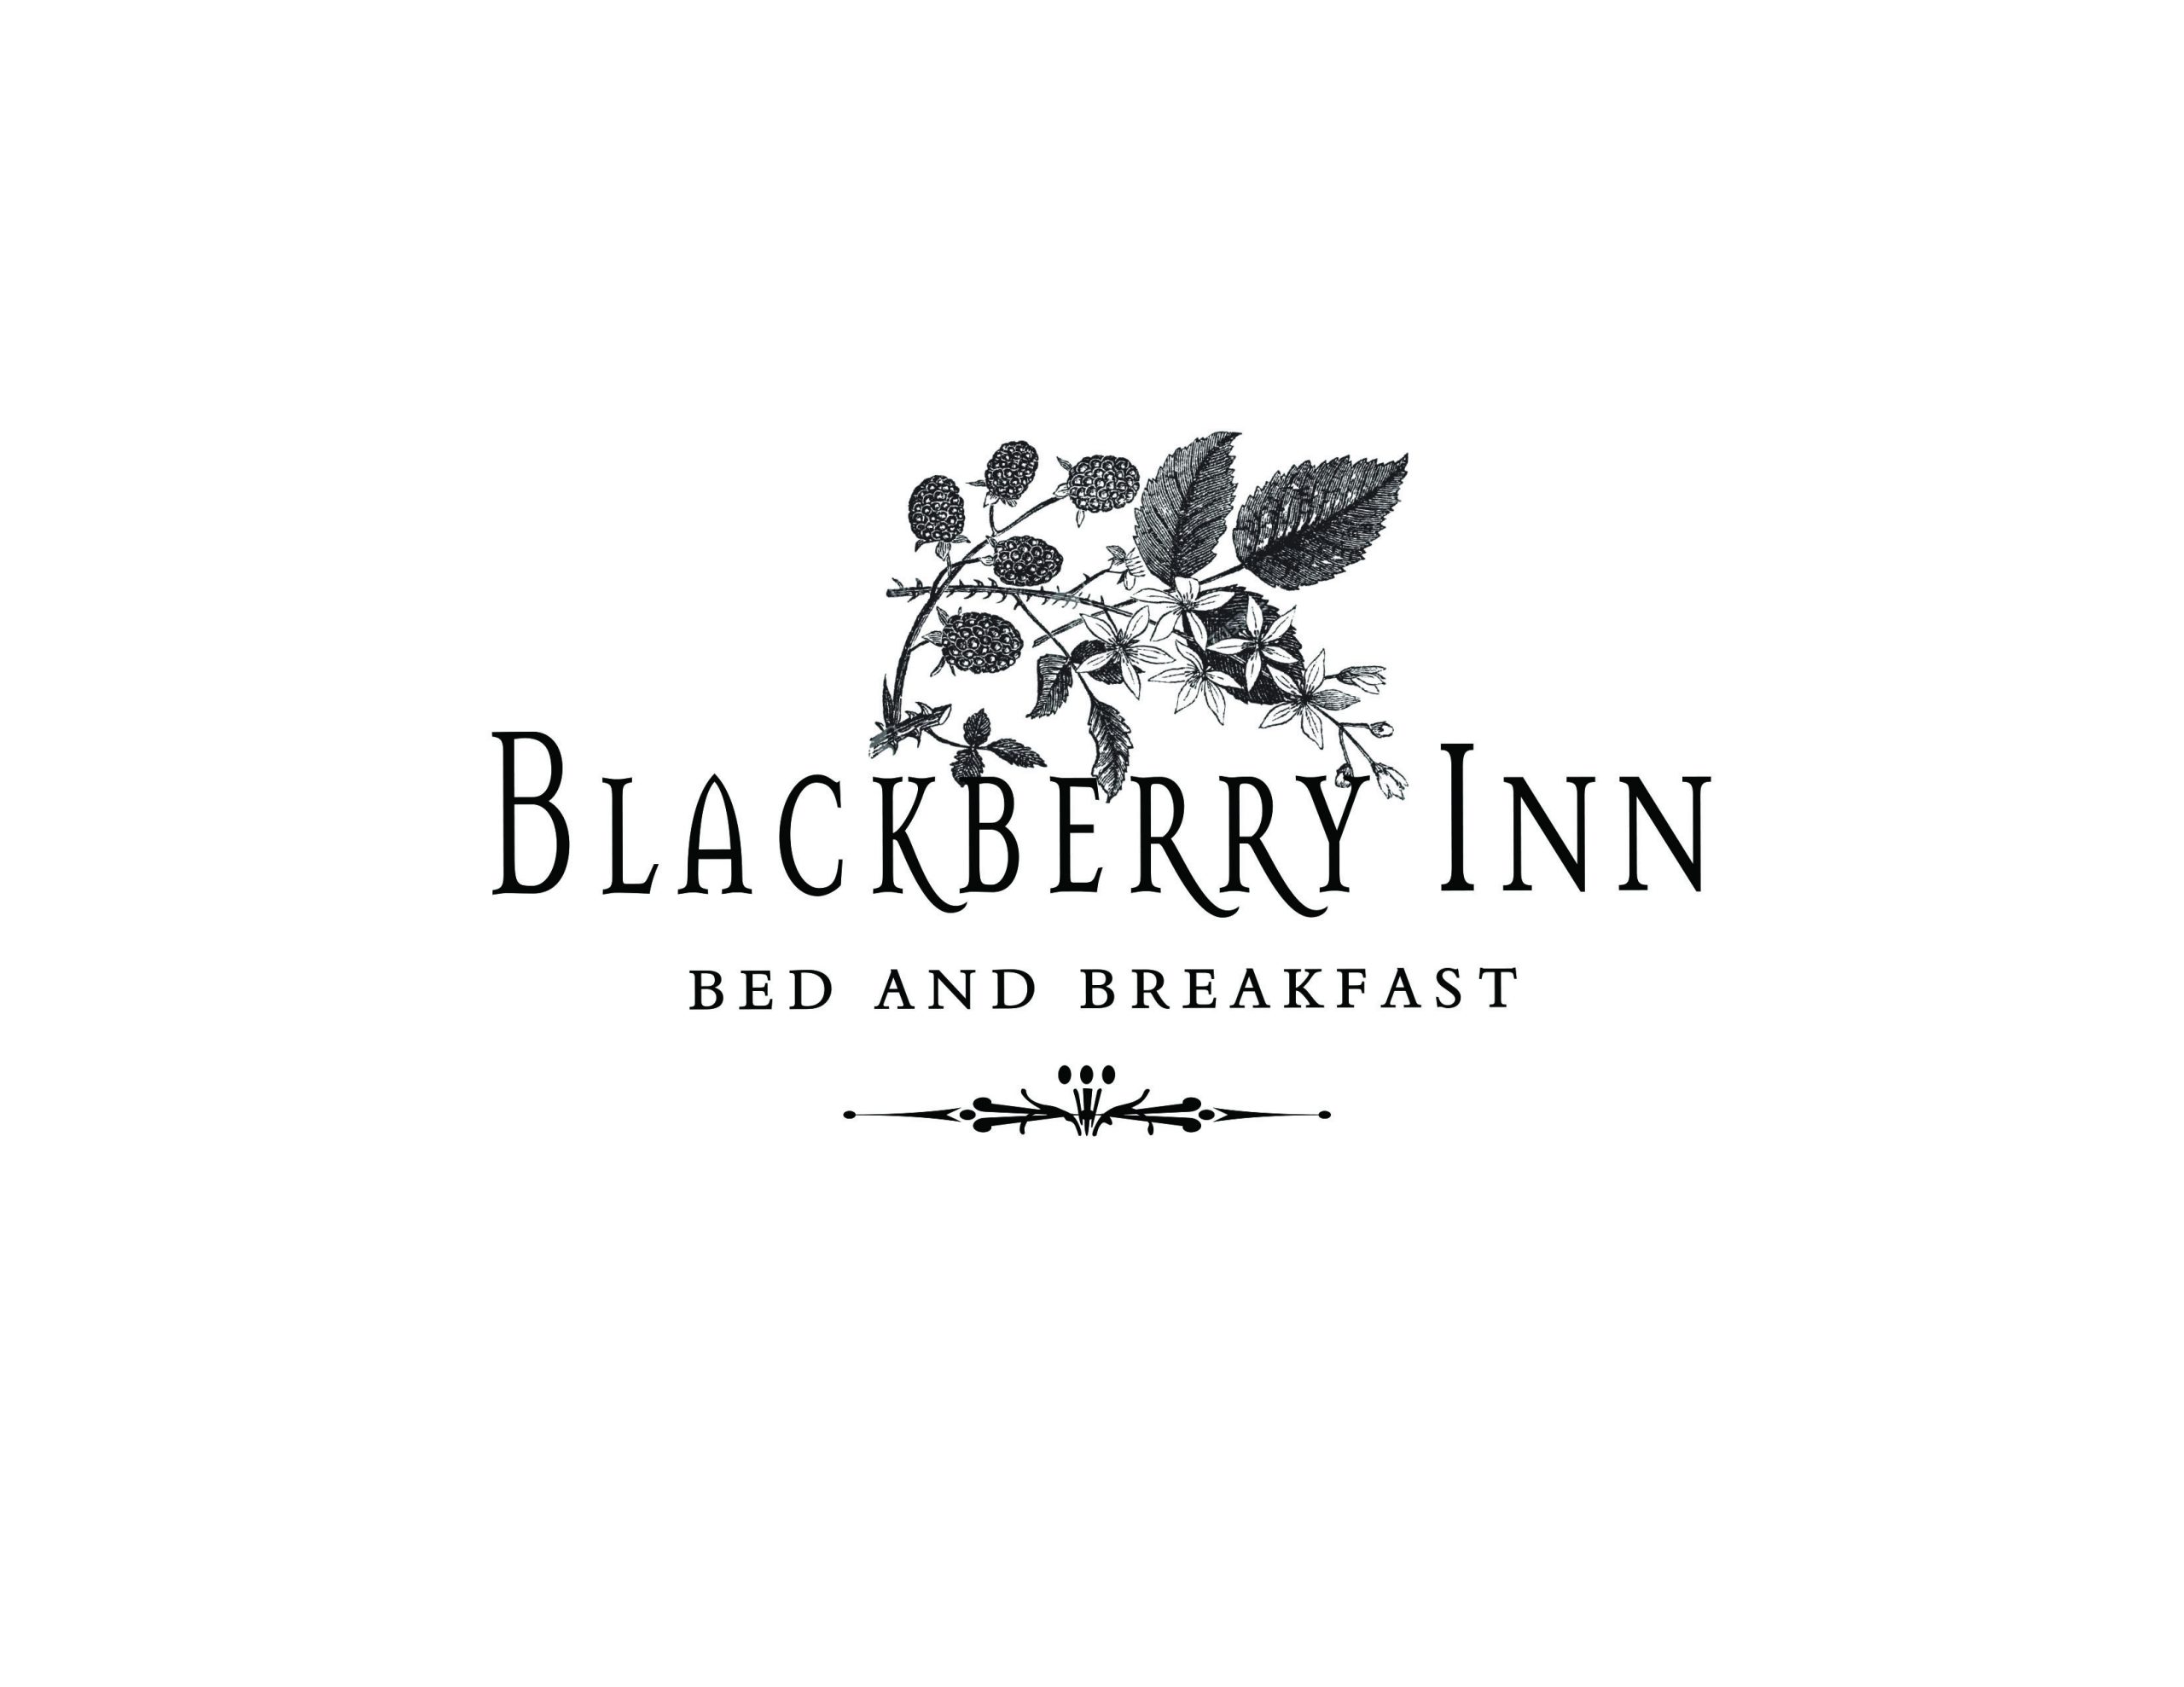 Blackberry inn business Logo